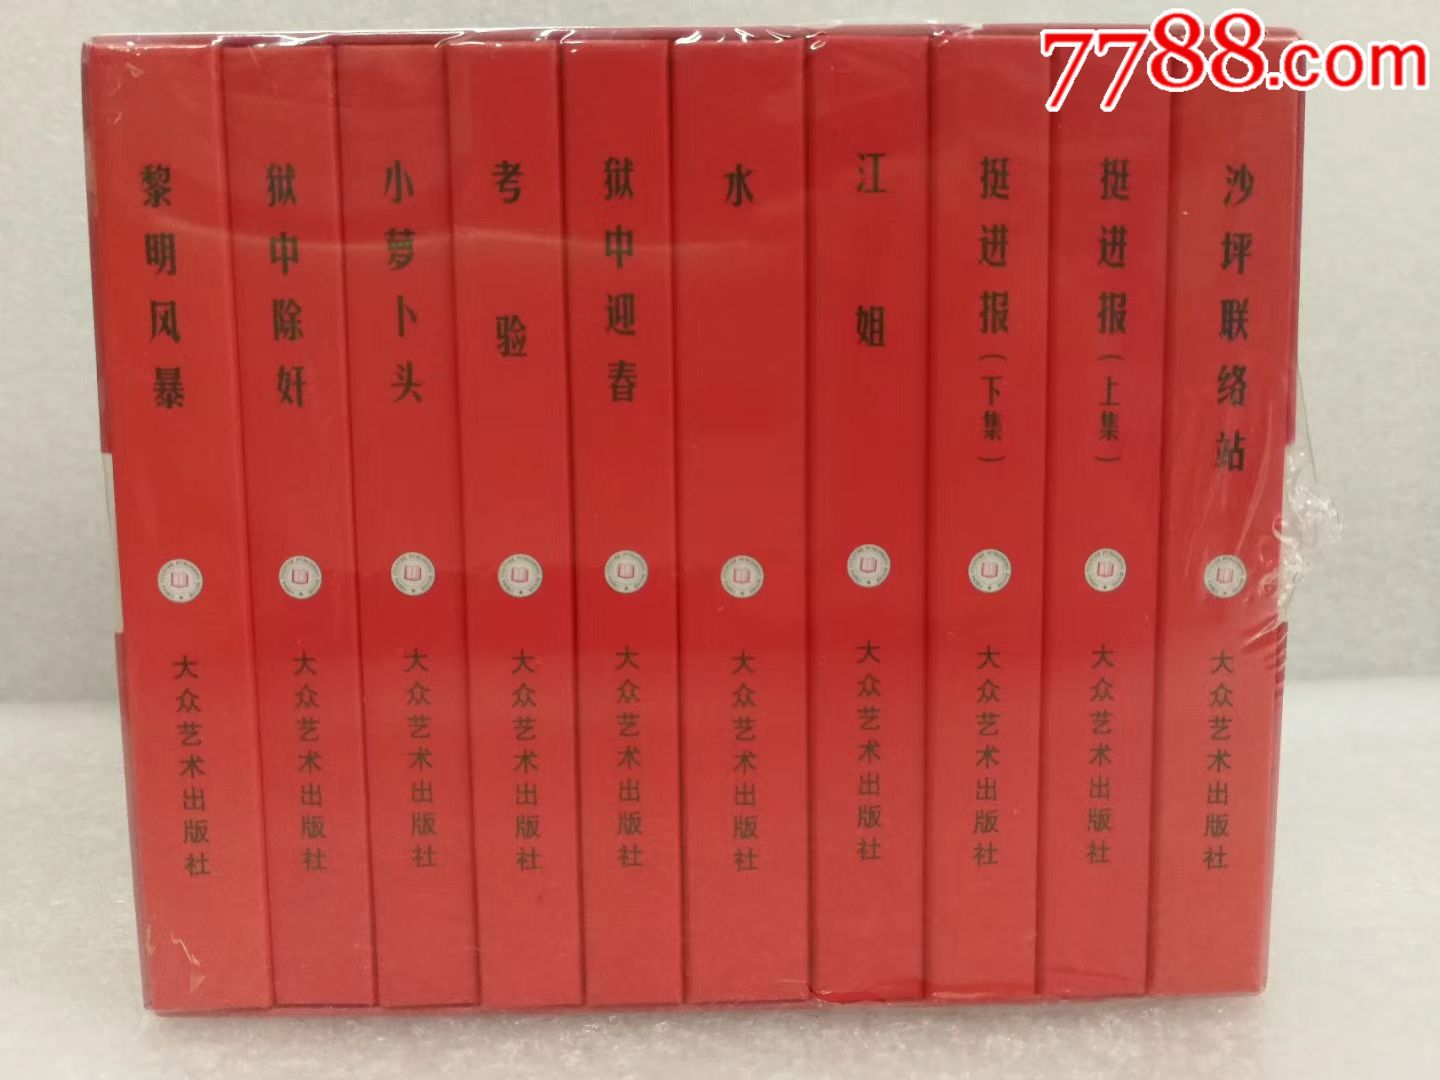 75折预售包邮再版(原78四川版)——红岩连环画集(10册全)